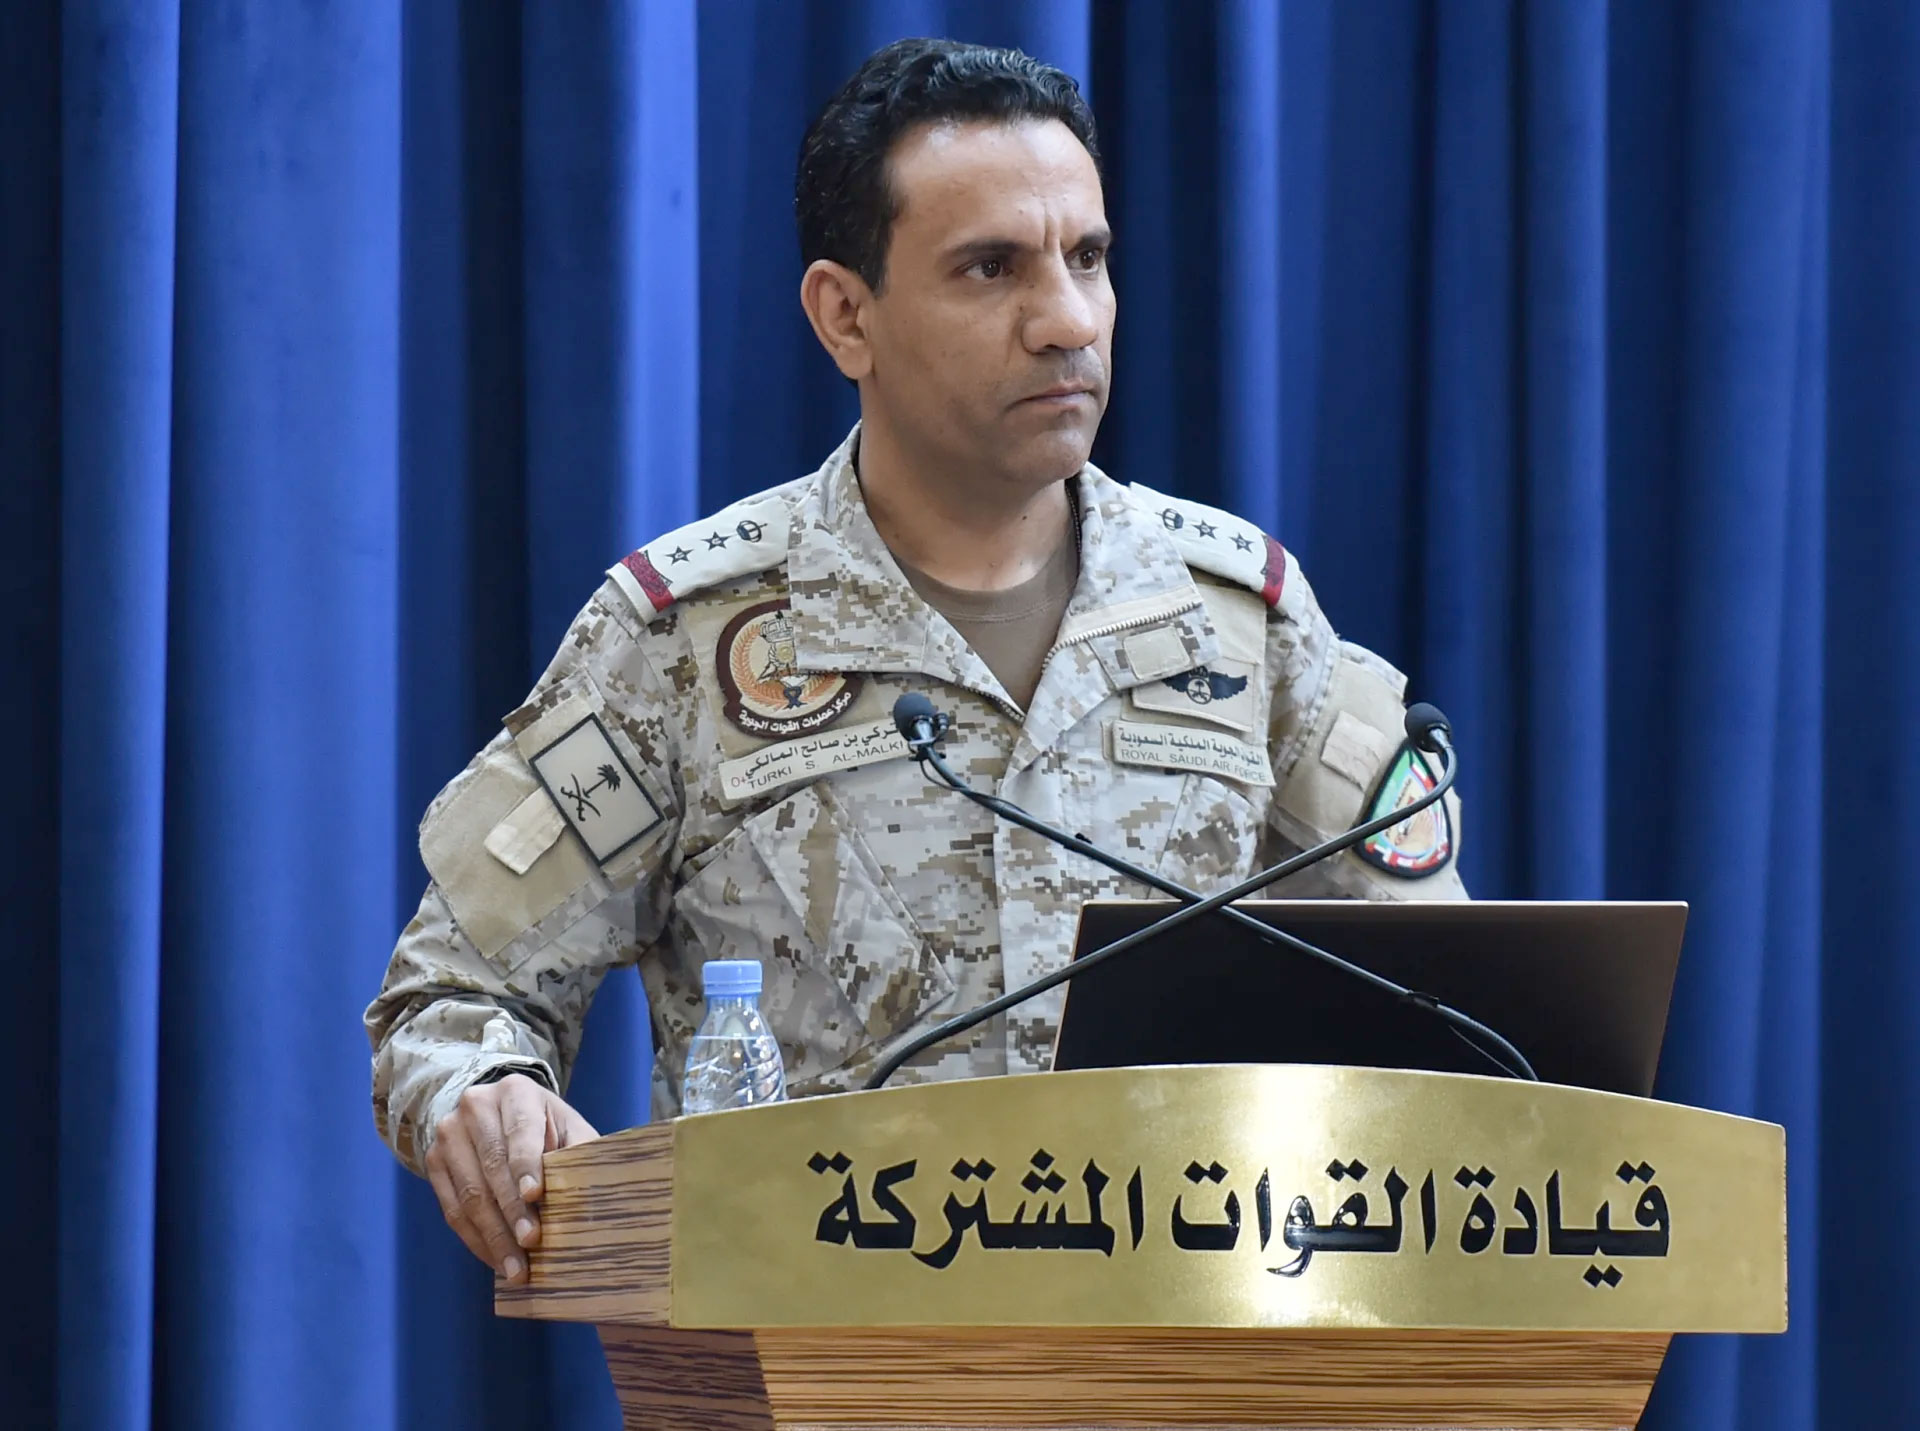 قيادة القوات المشتركة للتحالف: الأعمال العدائية للحوثيين تهديد للأمن الإقليمي والدولي